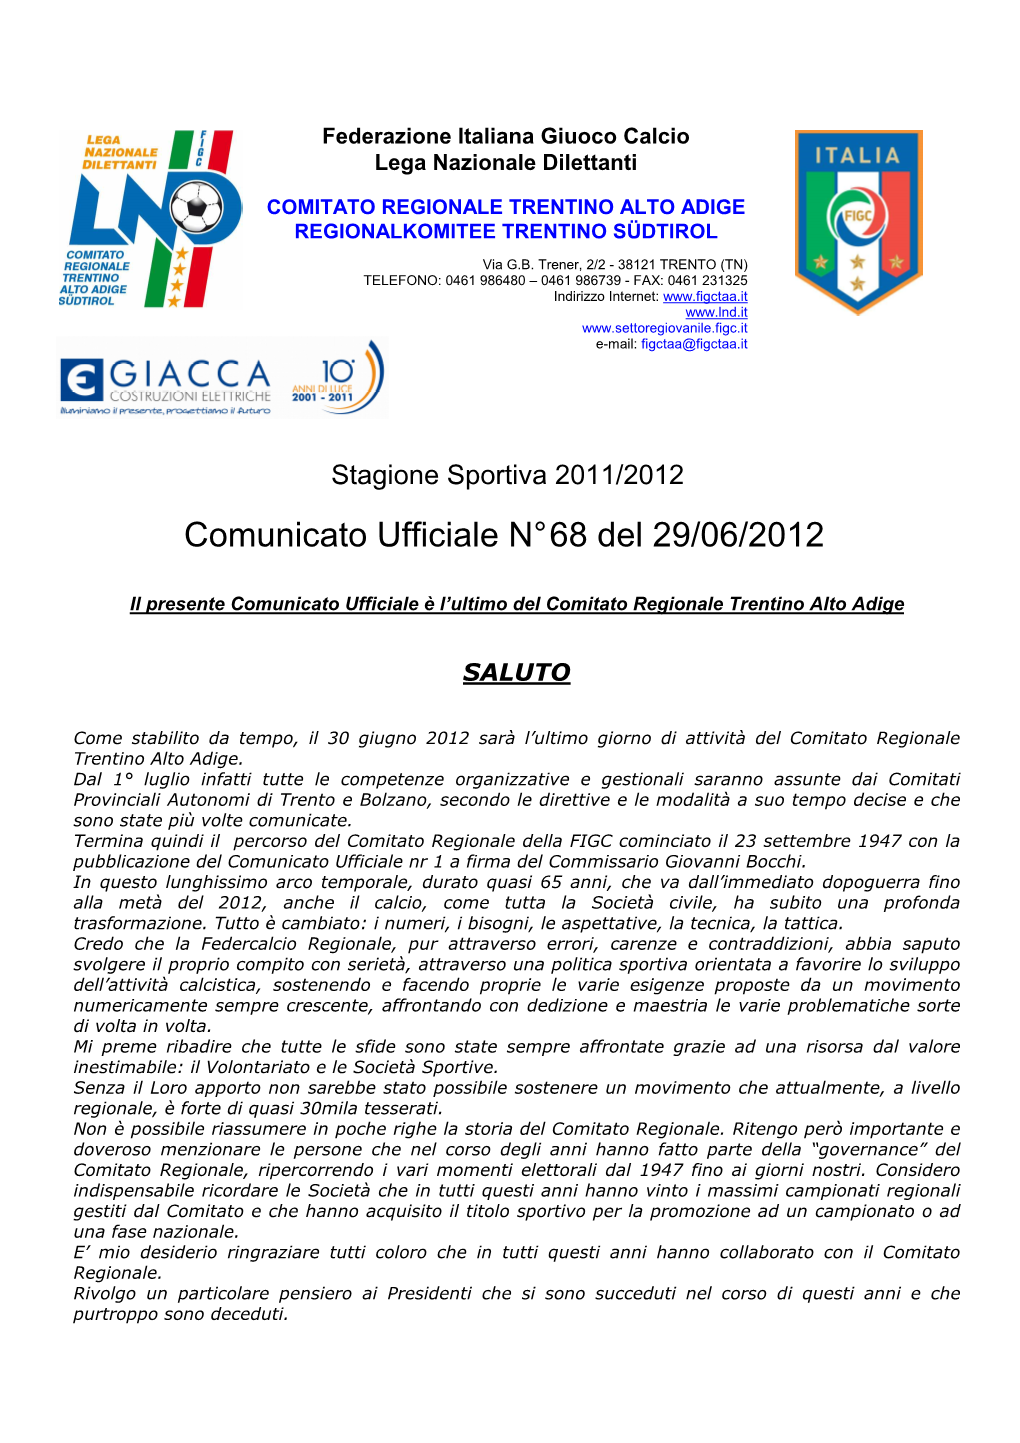 Comunicato Ufficiale N° 68 Del 29/06/2012